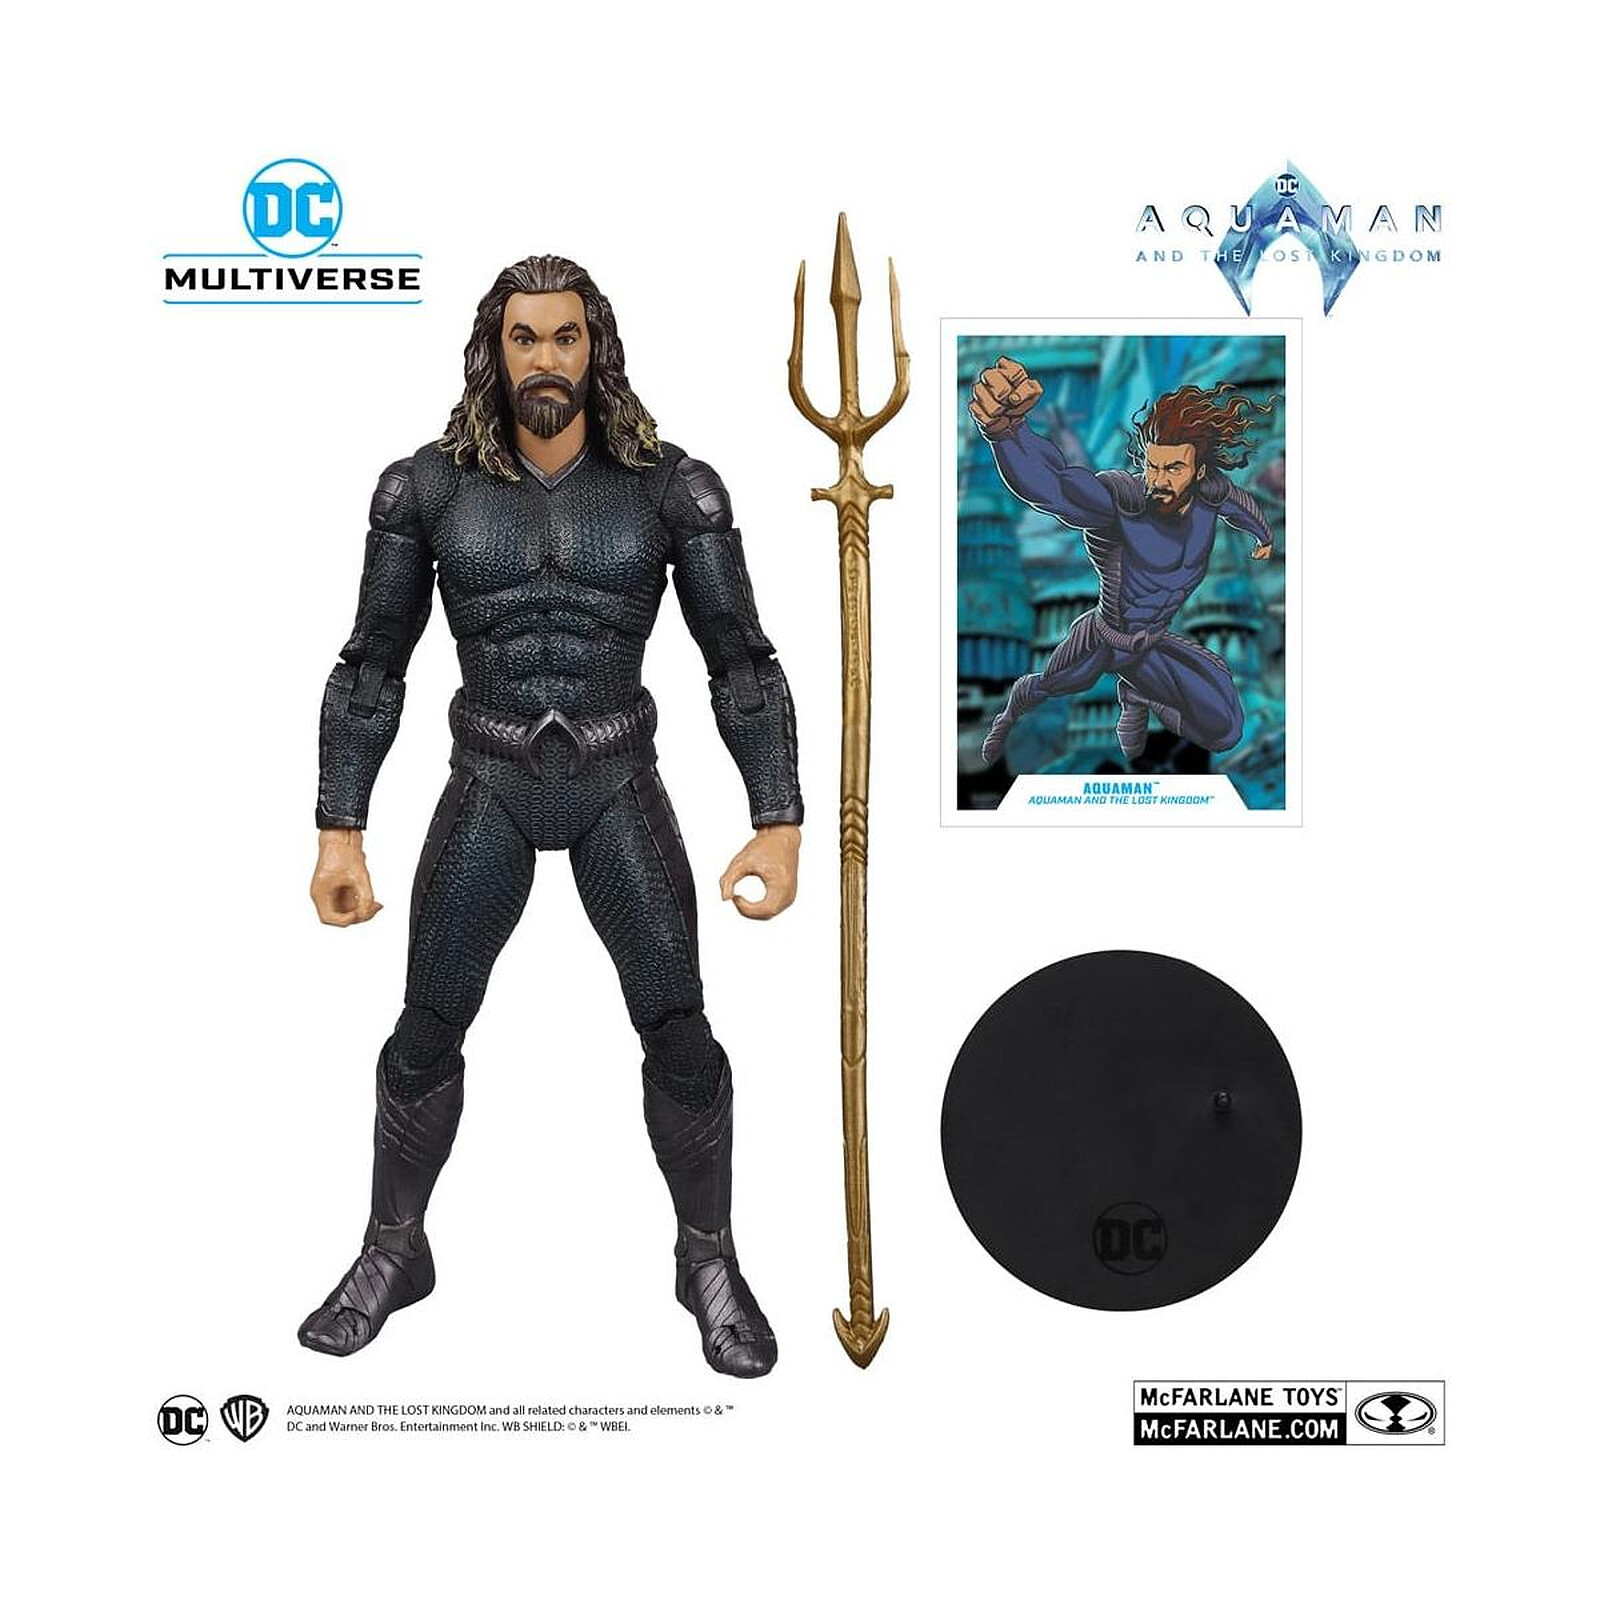 Aquaman et le Royaume perdu - Figurine DC Multiverse Aquaman with Stealth  Suit 18 cm - Figurine-Discount